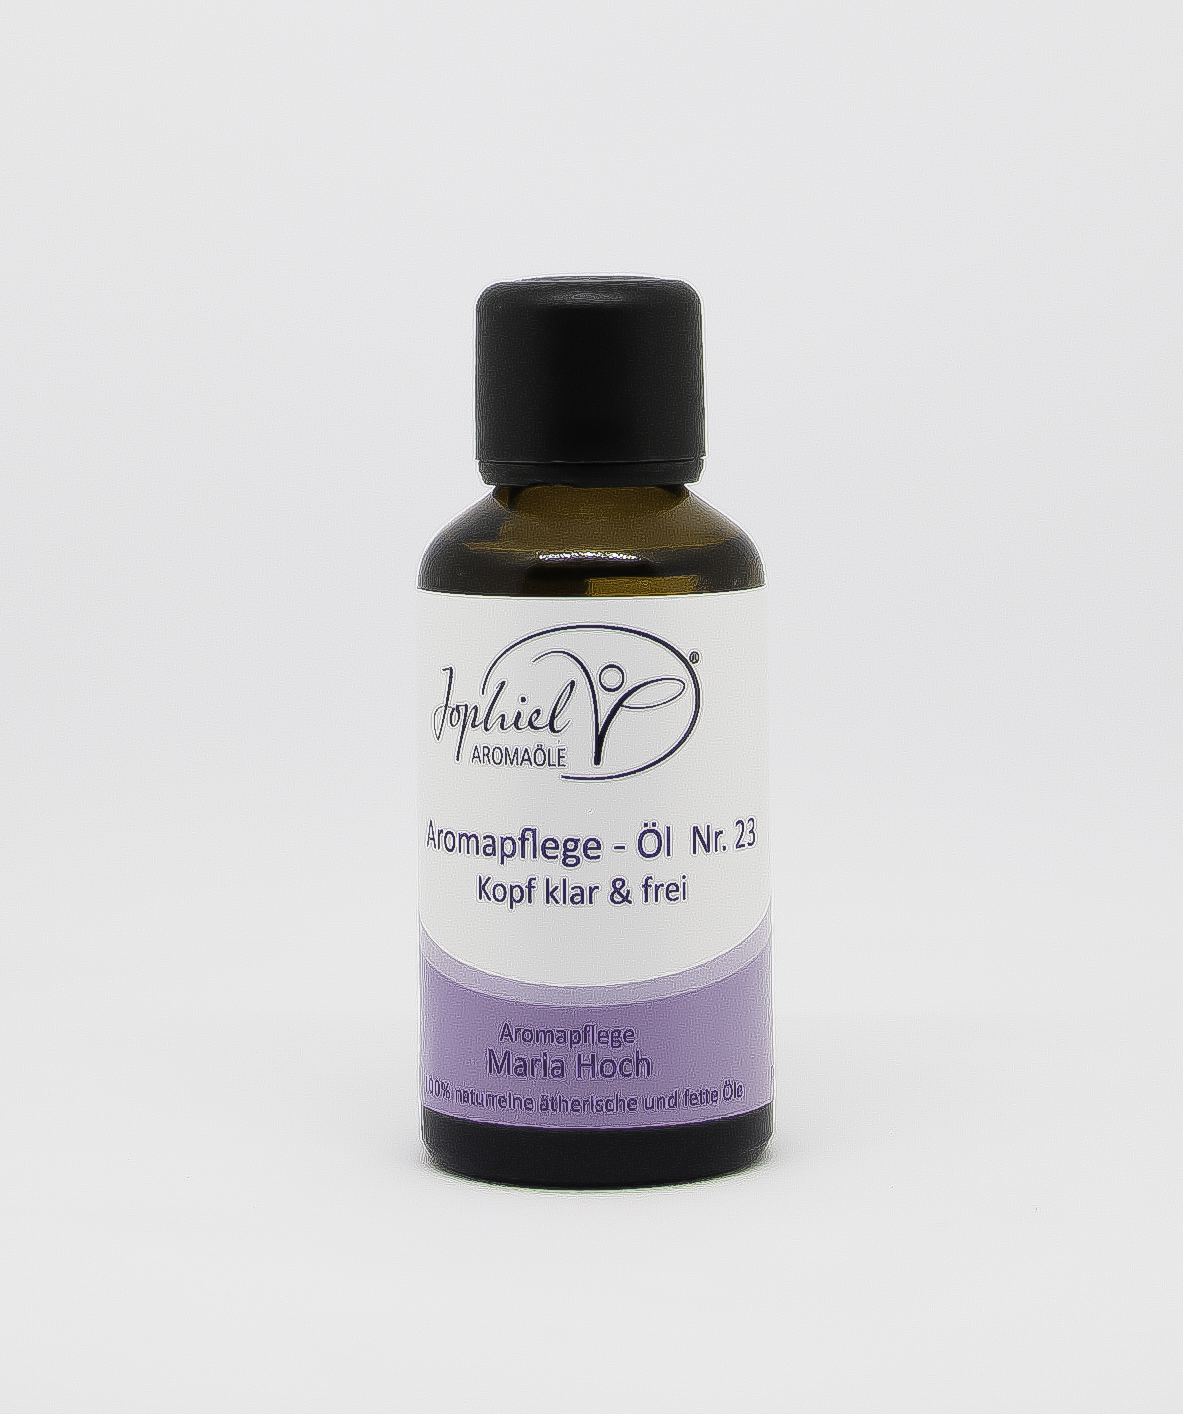 Aromapflege-Öl Nr. 23 Kopf klar & frei 50 ml  Bio